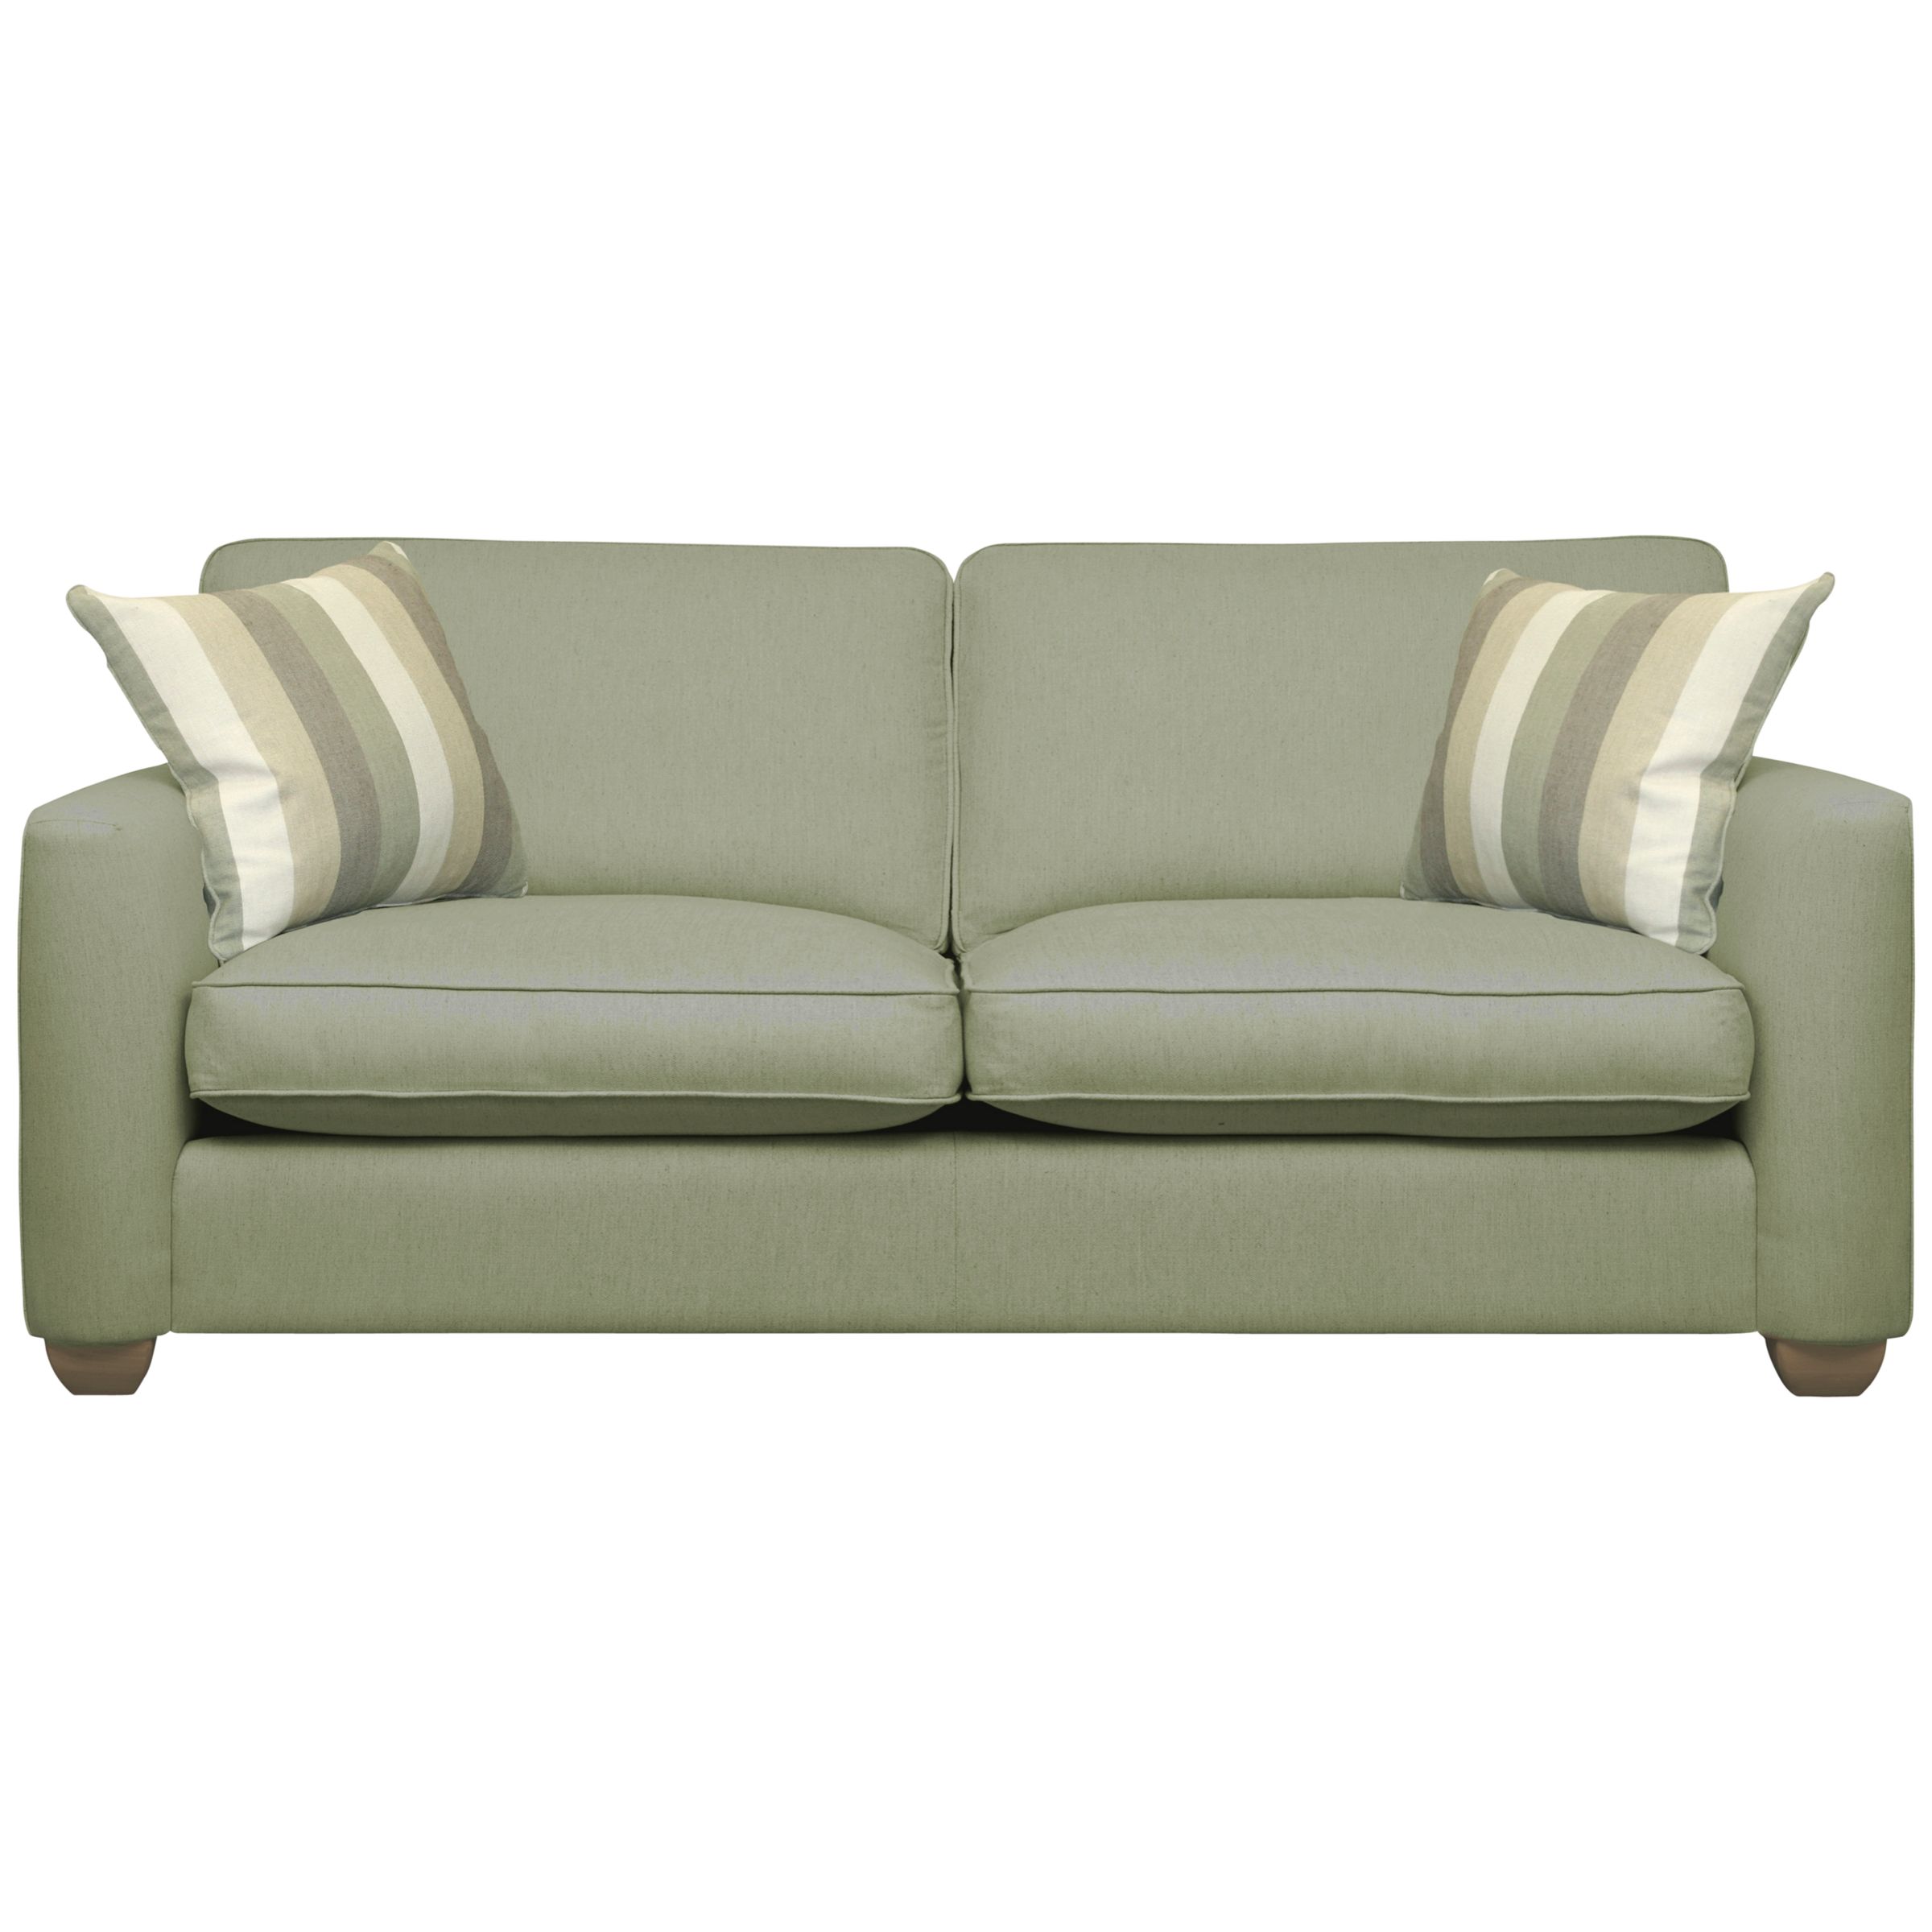 John Lewis Walton Large Sofa, Sage, width 200cm